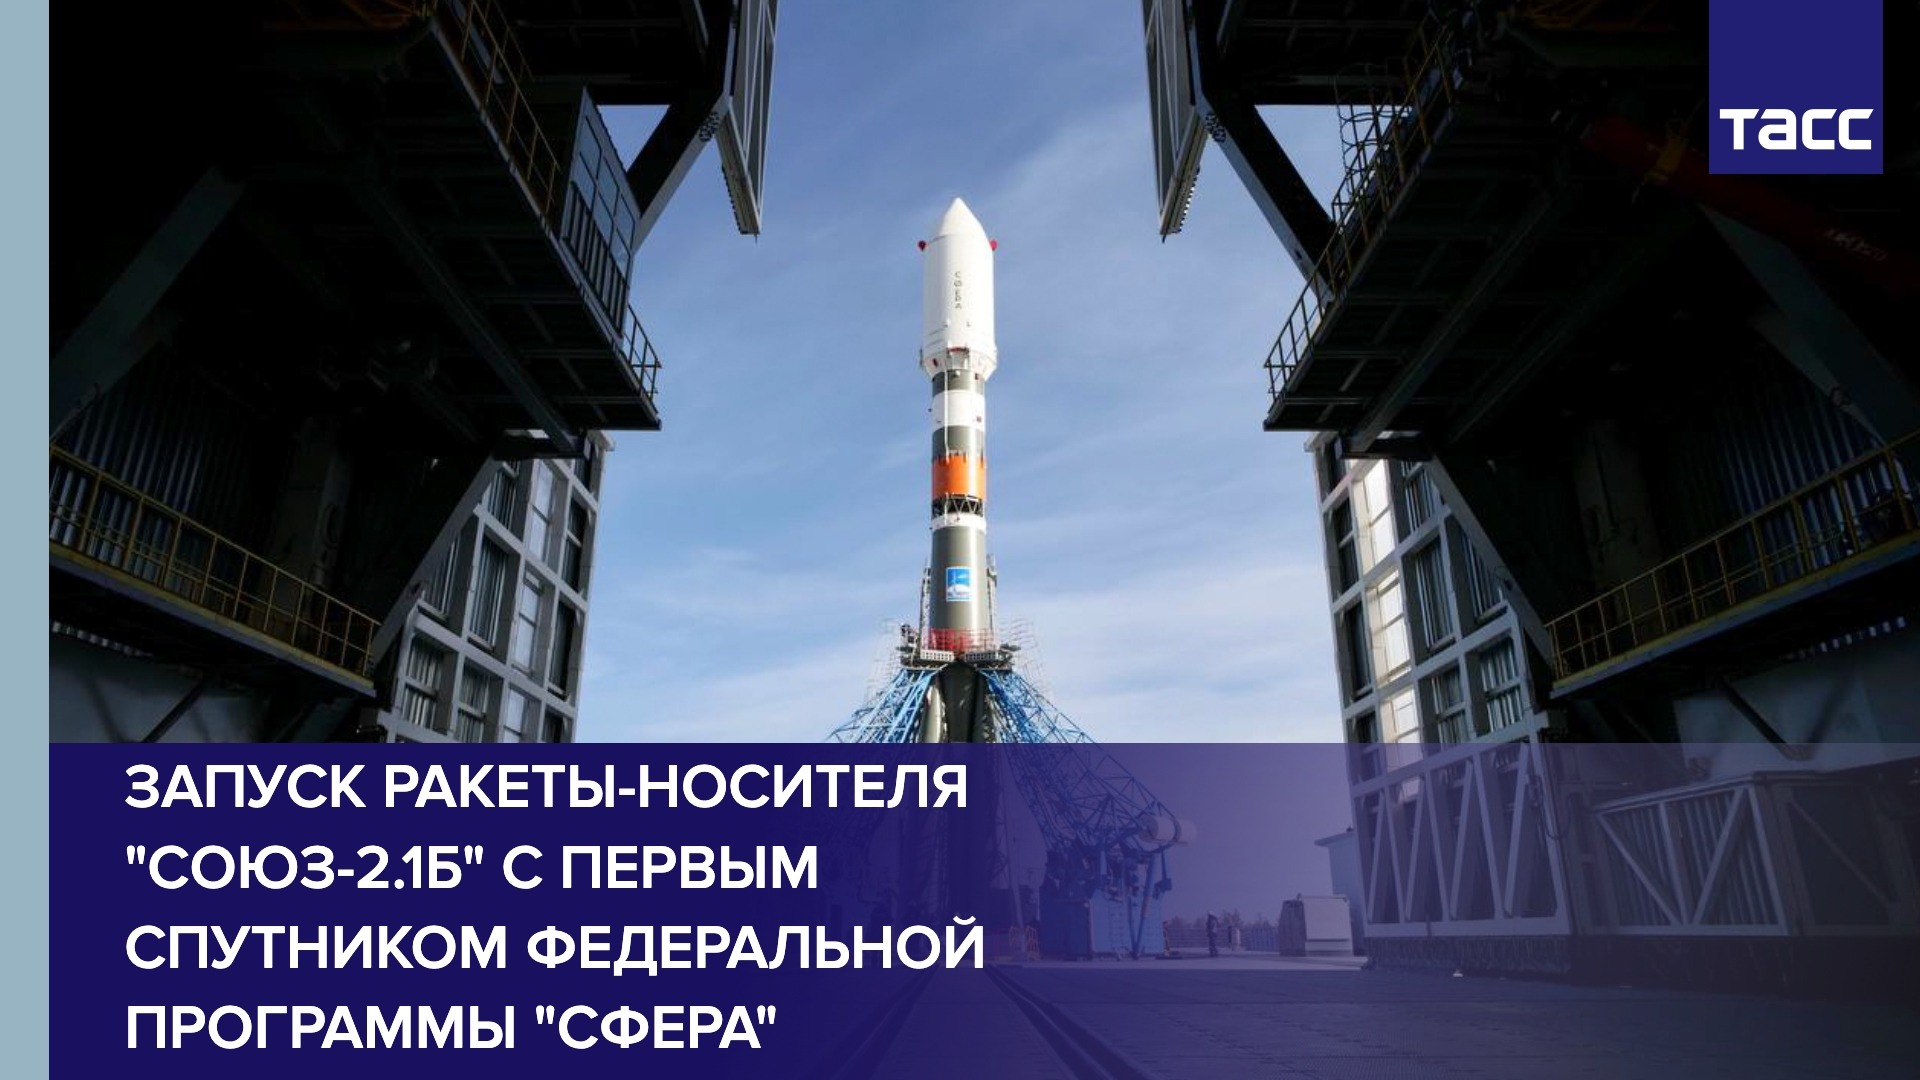 Запуск ракеты-носителя "Союз-2.1б" с первым спутником федеральной программы "Сфера"